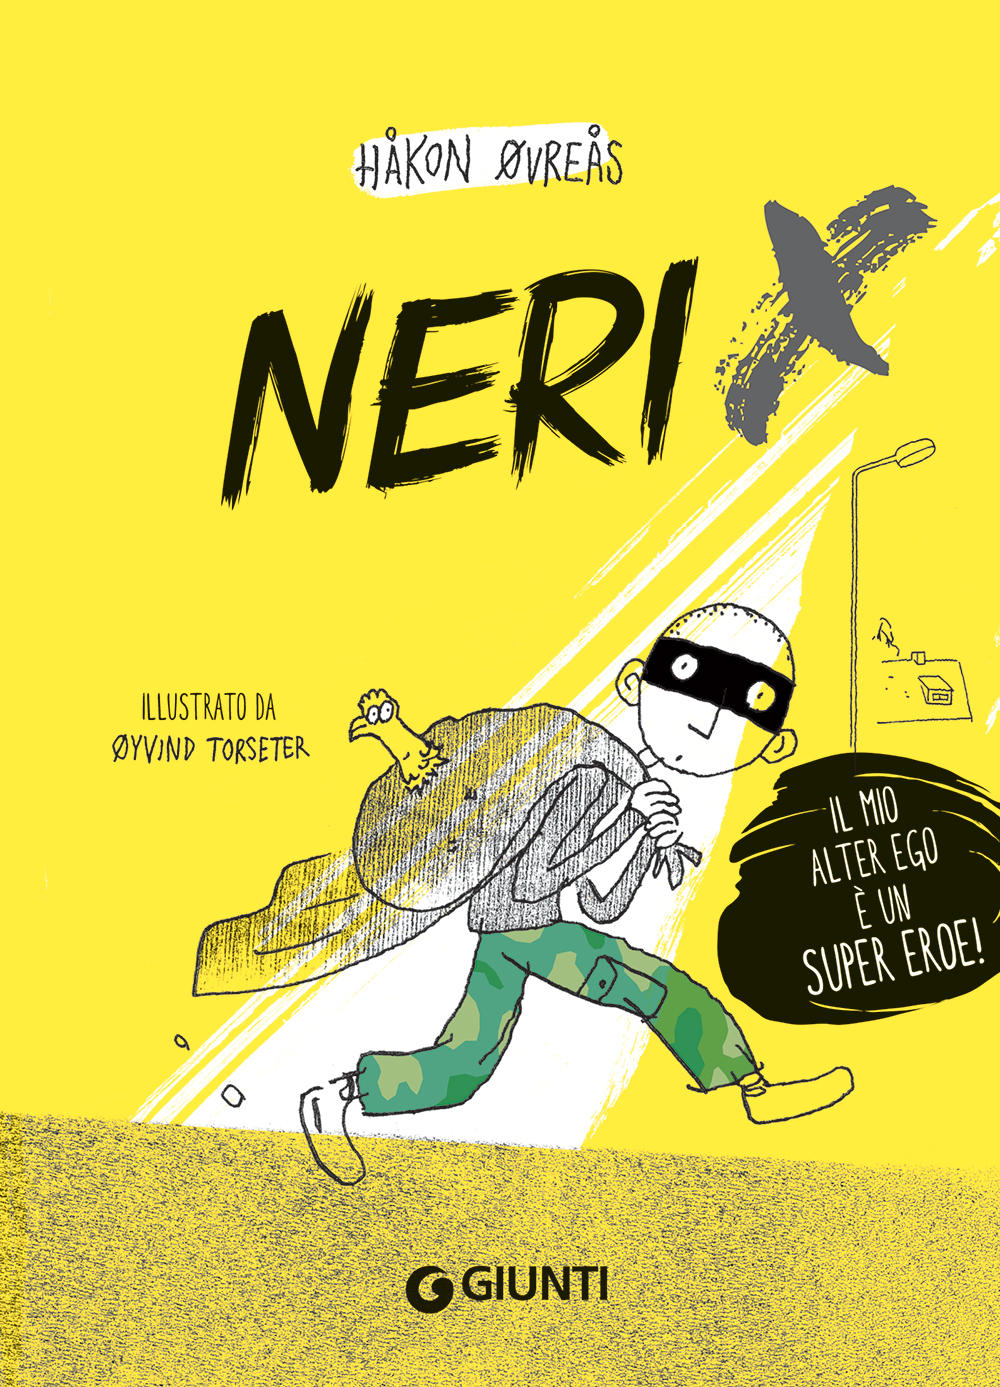 Neri X. Il mio alter ego è un super eroe!